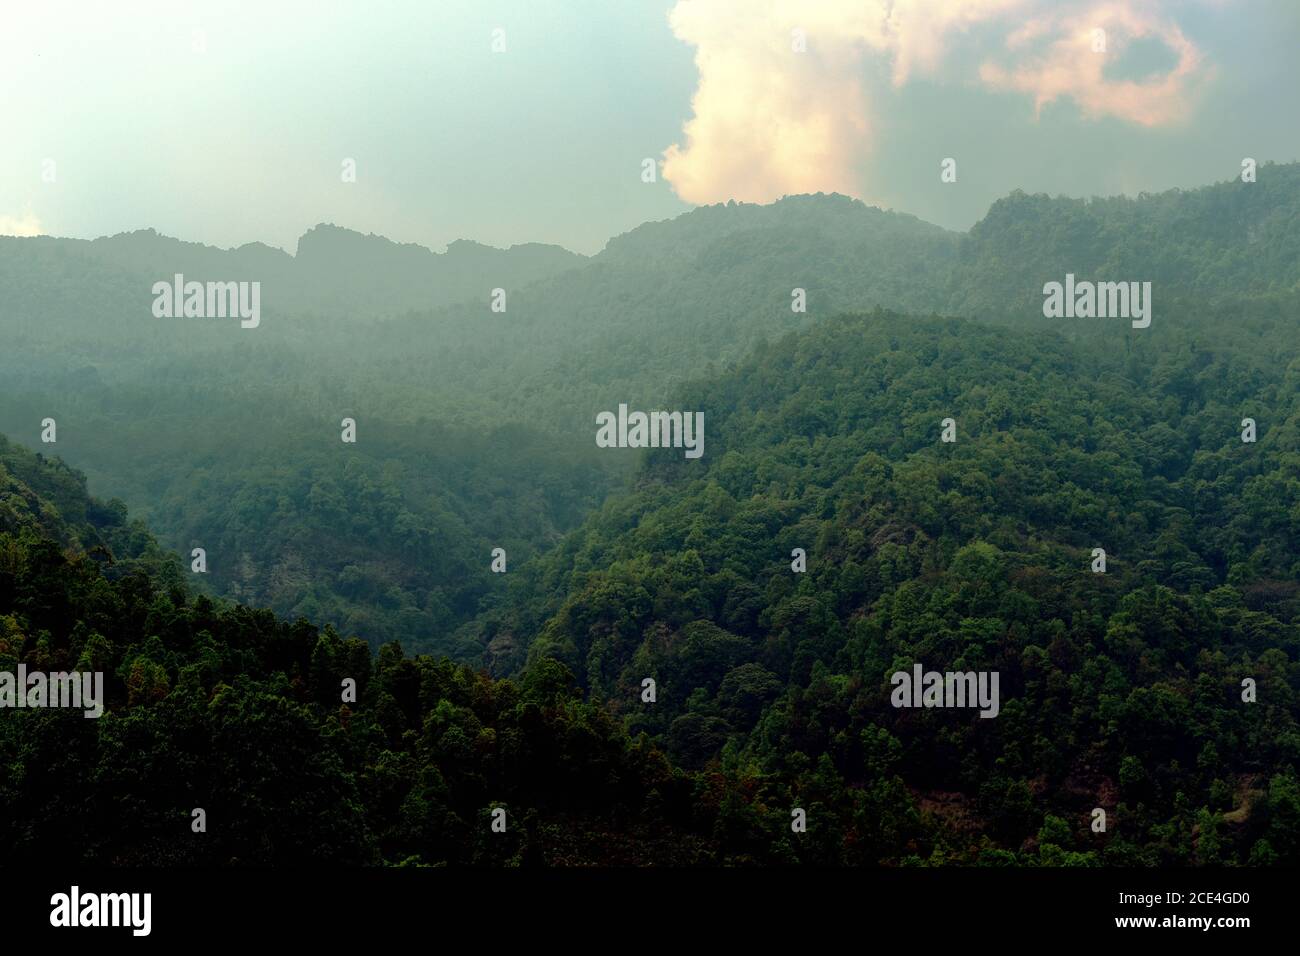 Die Gipfel des Panchase-Berges vom Dorf Sidhane aus gesehen, Gandaki Pradesh, Nepal. Stockfoto